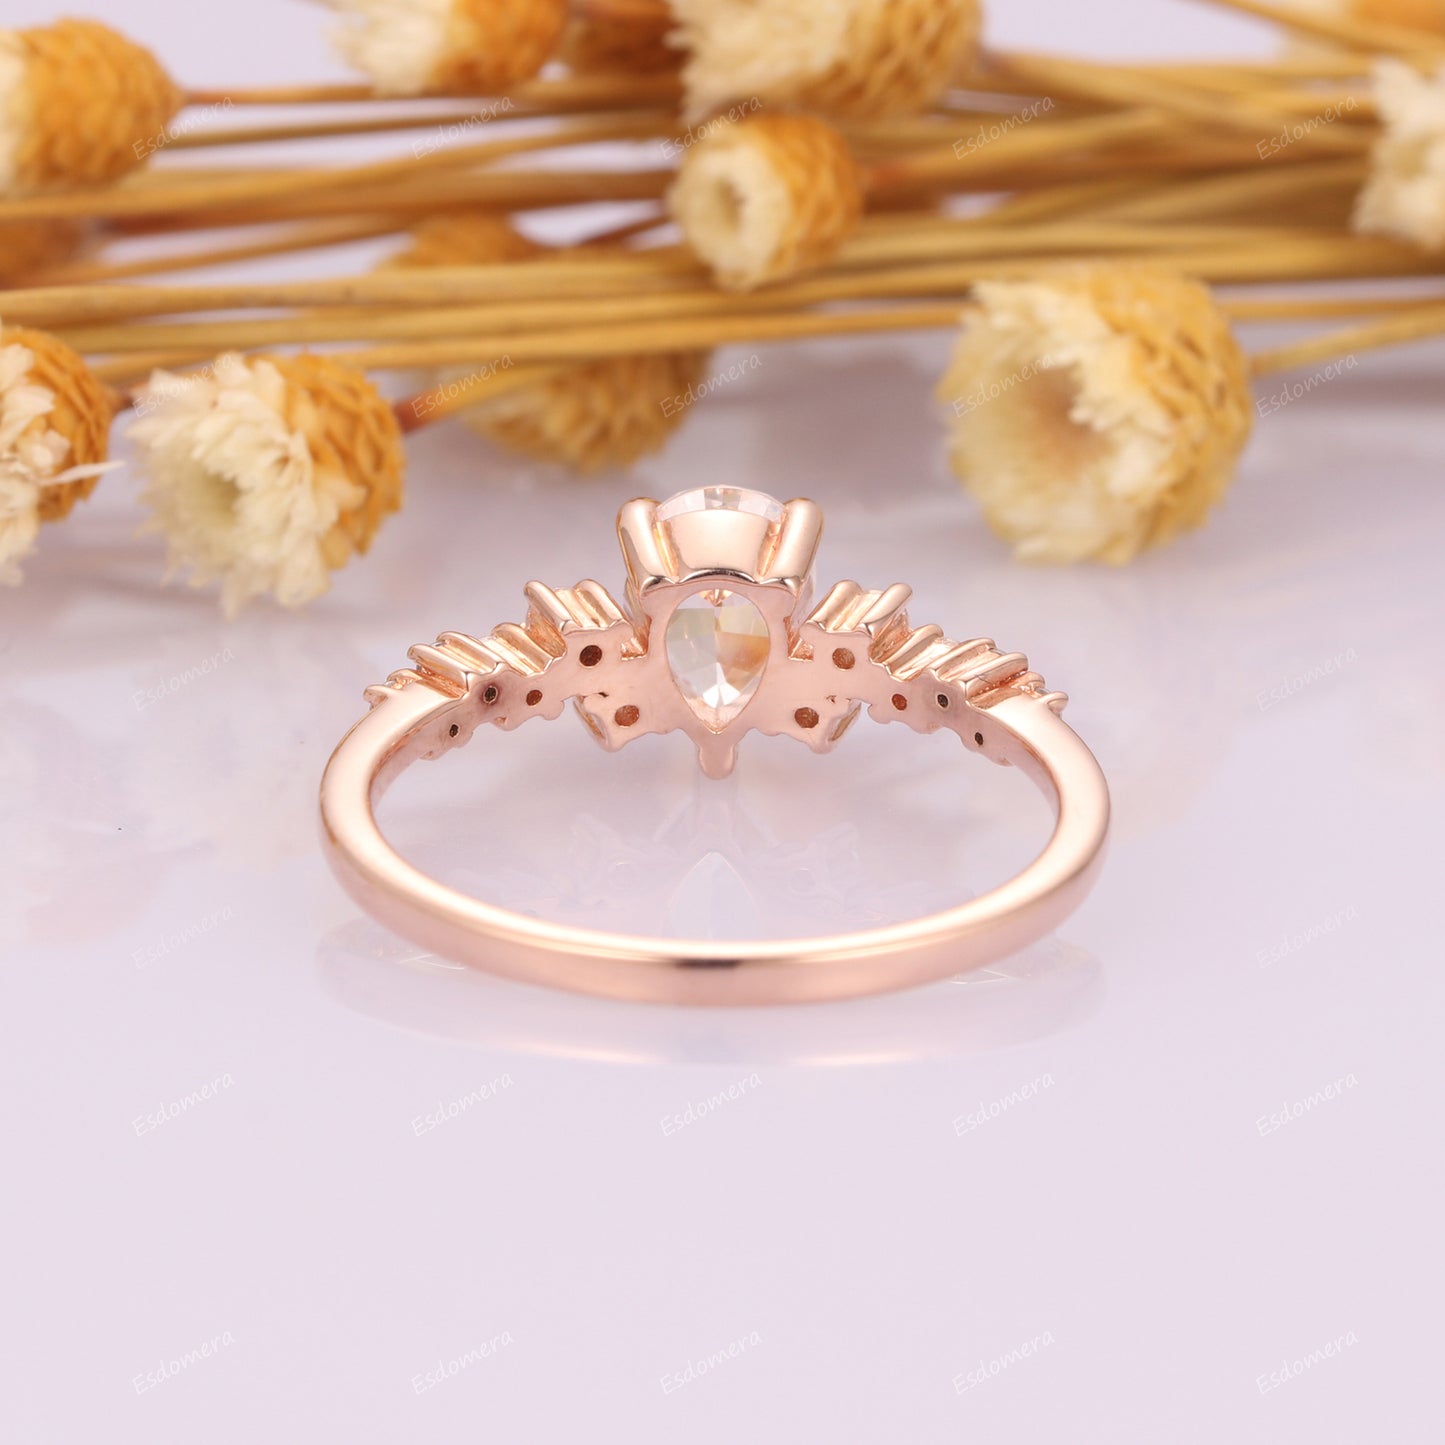 5x7mm Pear Cut Moissanite Promise Engagement Ring, Art Deco Moissanite Cluster Ring, 14k Rose Gold Anniversary Ring For Her